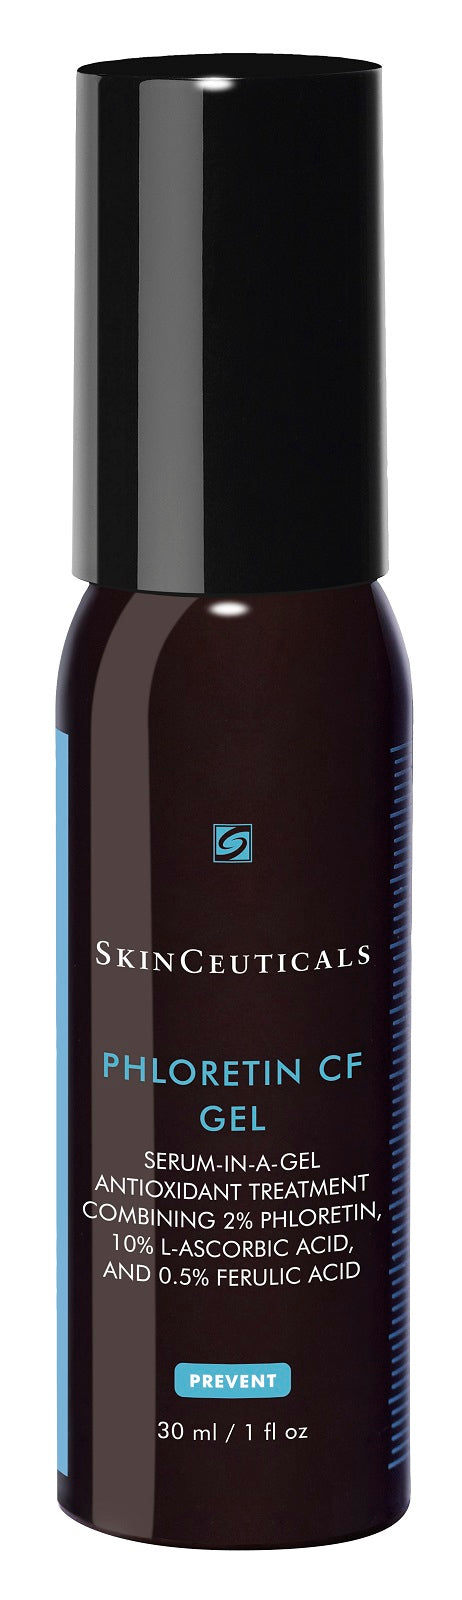 SkinCeuticals Phloretin CF Gel - 1 oz